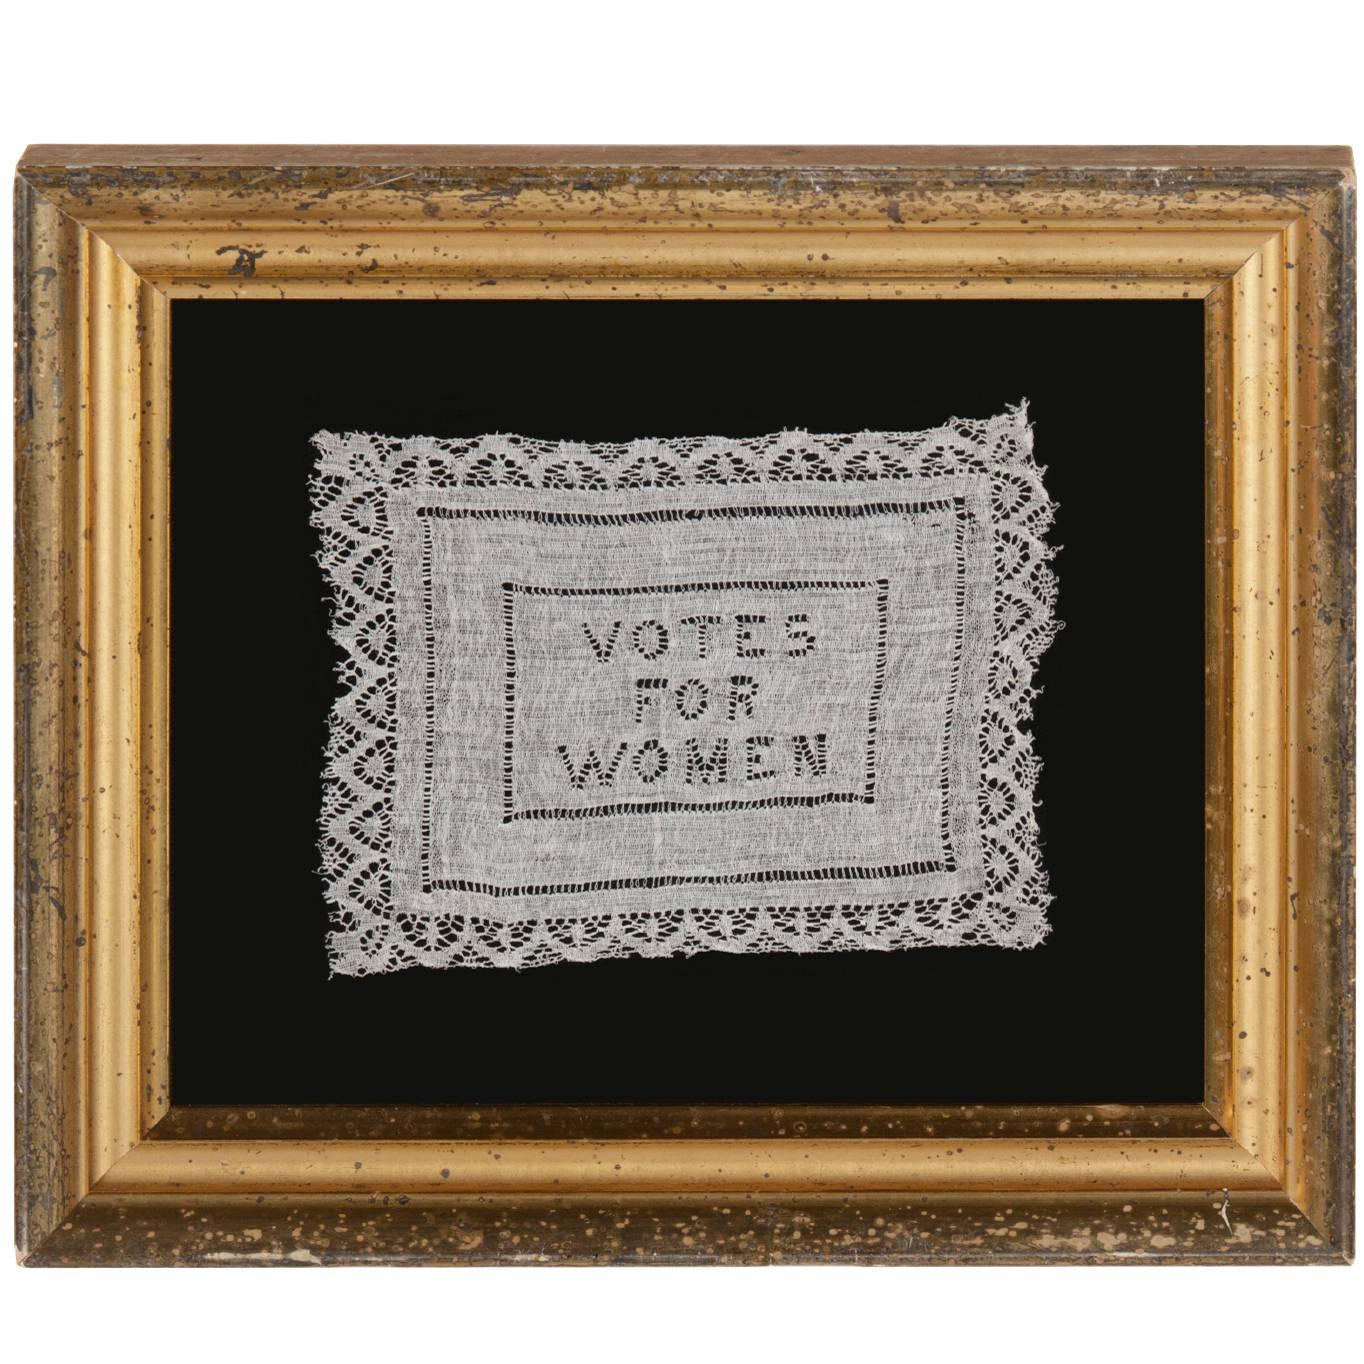 Whitework "Votes for Women" Textile